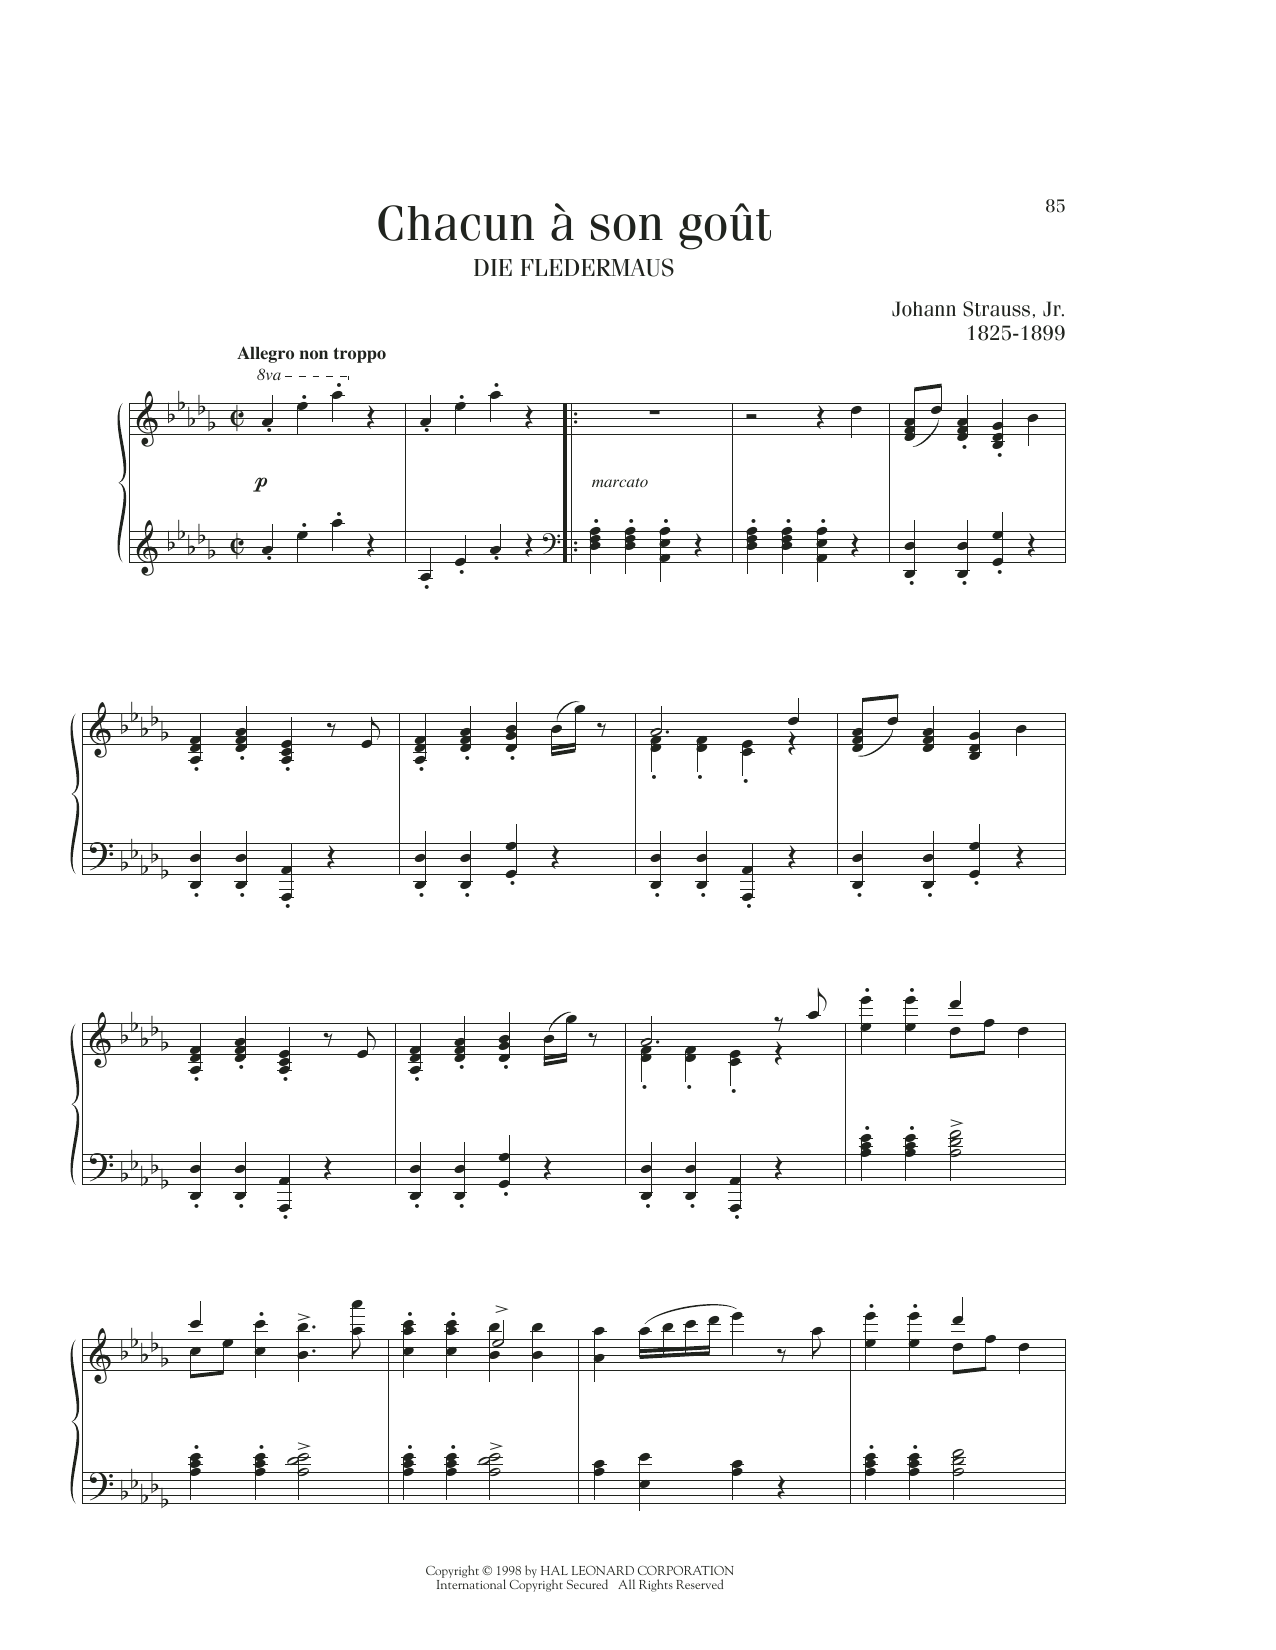 Johann Strauss Chacun A Son Gout sheet music notes printable PDF score